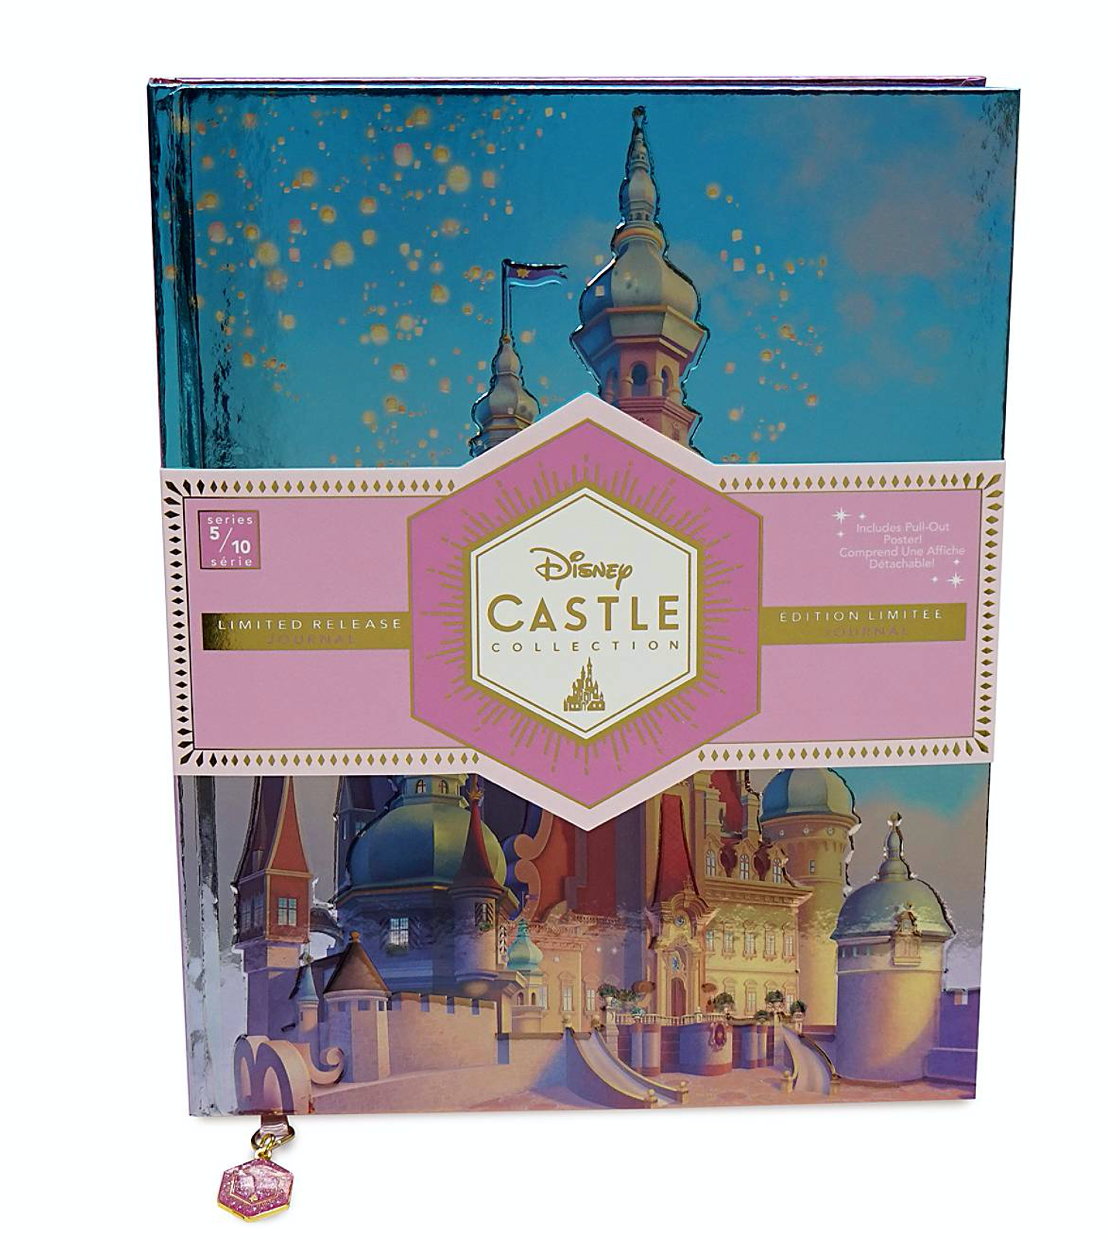 Disney Castle Collection Rapunzel Castle Limited Journal New